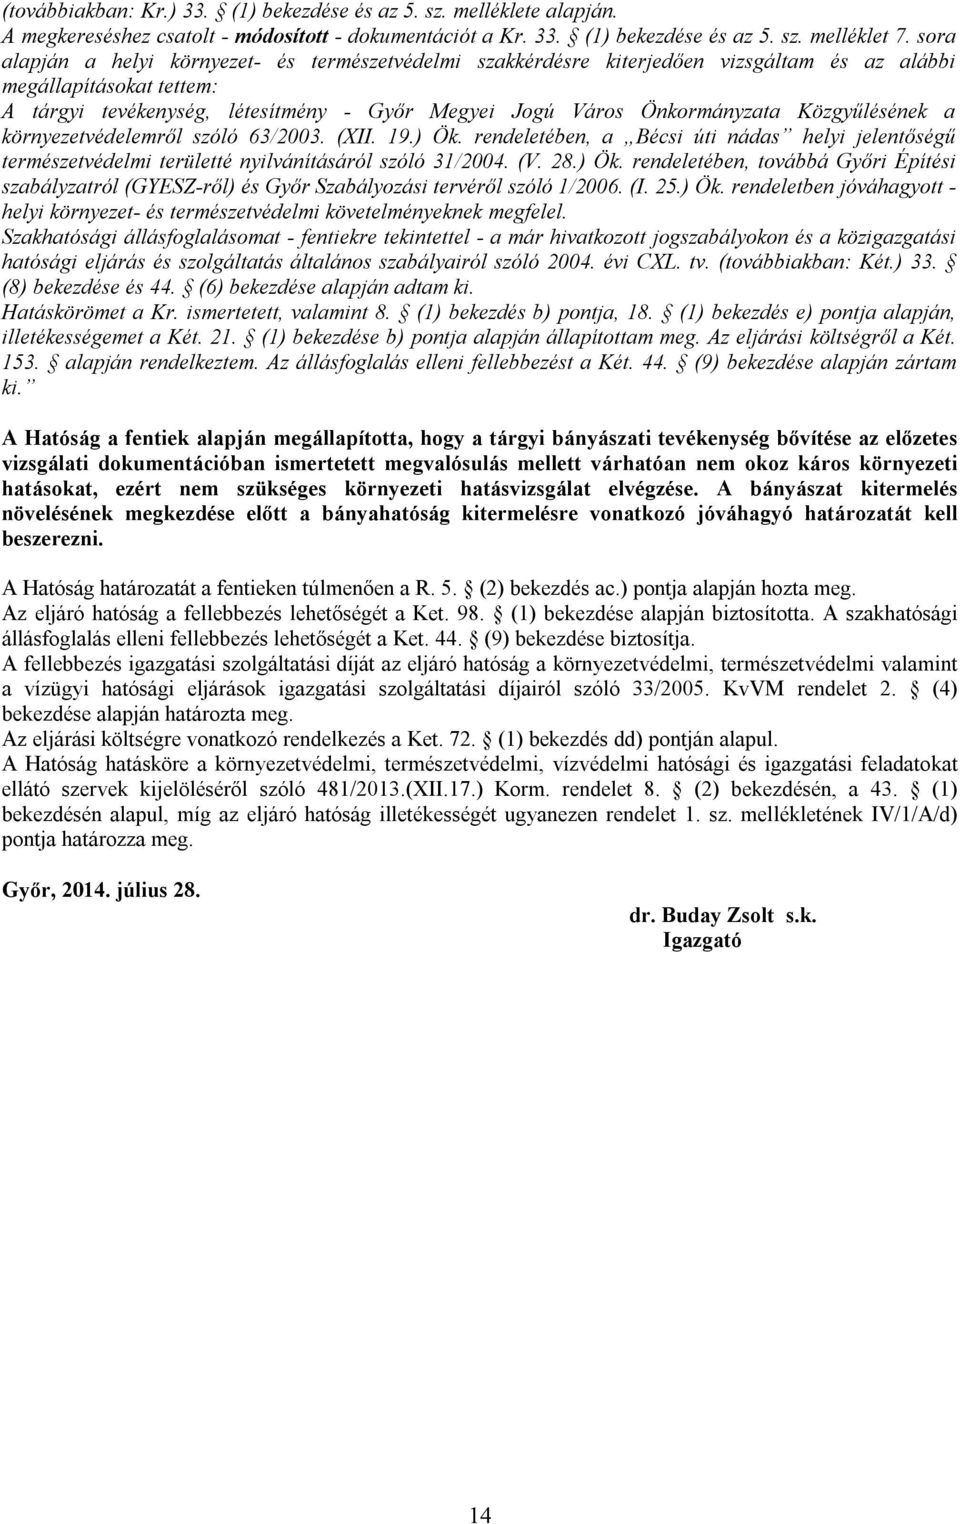 Közgyűlésének a környezetvédelemről szóló 63/2003. (XII. 19.) Ök. rendeletében, a Bécsi úti nádas helyi jelentőségű természetvédelmi területté nyilvánításáról szóló 31/2004. (V. 28.) Ök. rendeletében, továbbá Győri Építési szabályzatról (GYESZ-ről) és Győr Szabályozási tervéről szóló 1/2006.